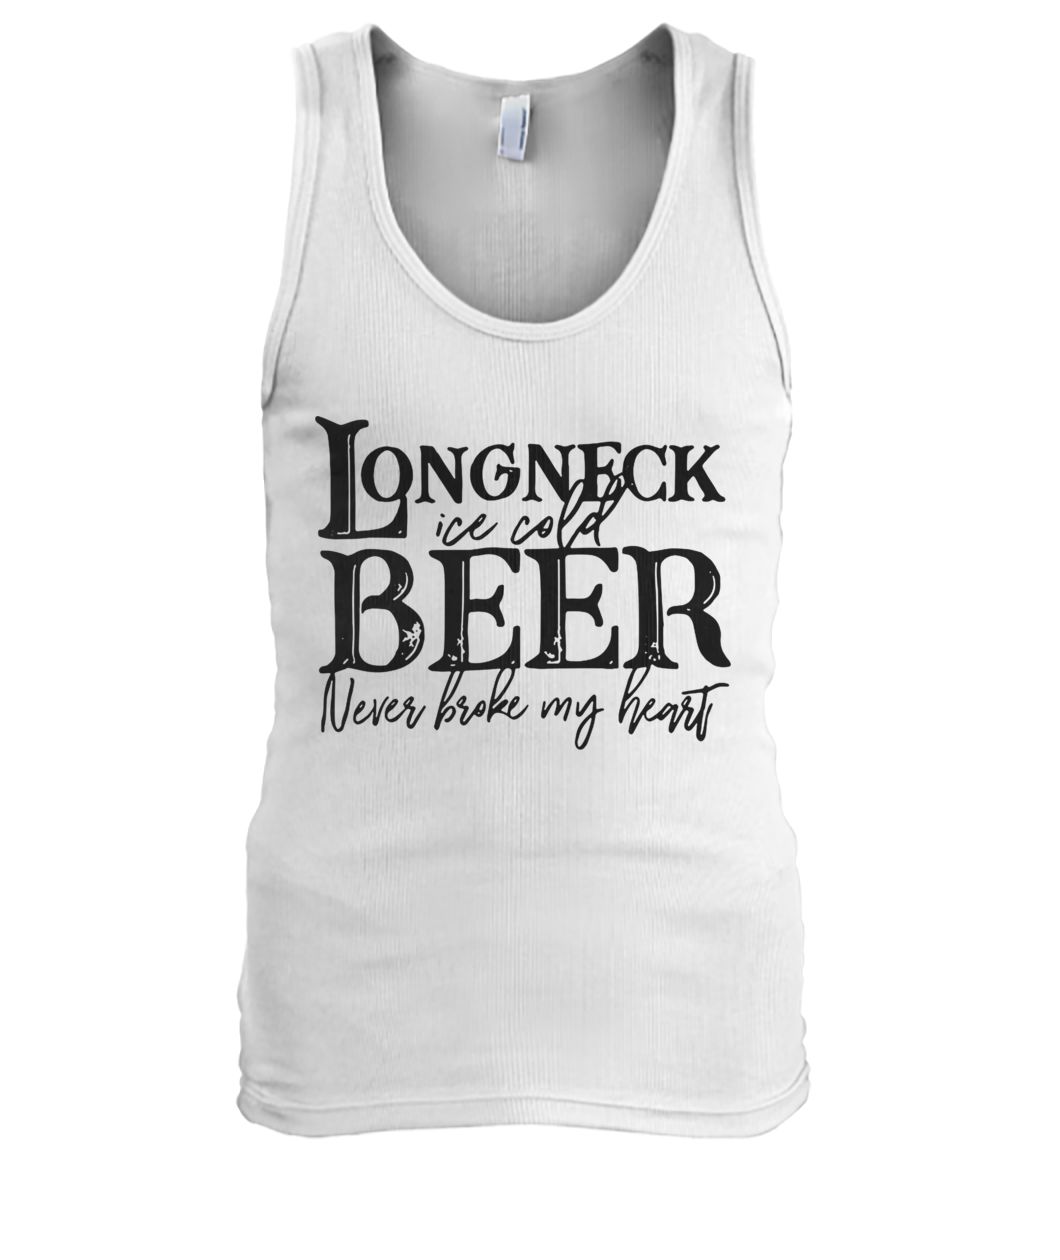 Longneck ice cold beer never broke my heart men's tank top